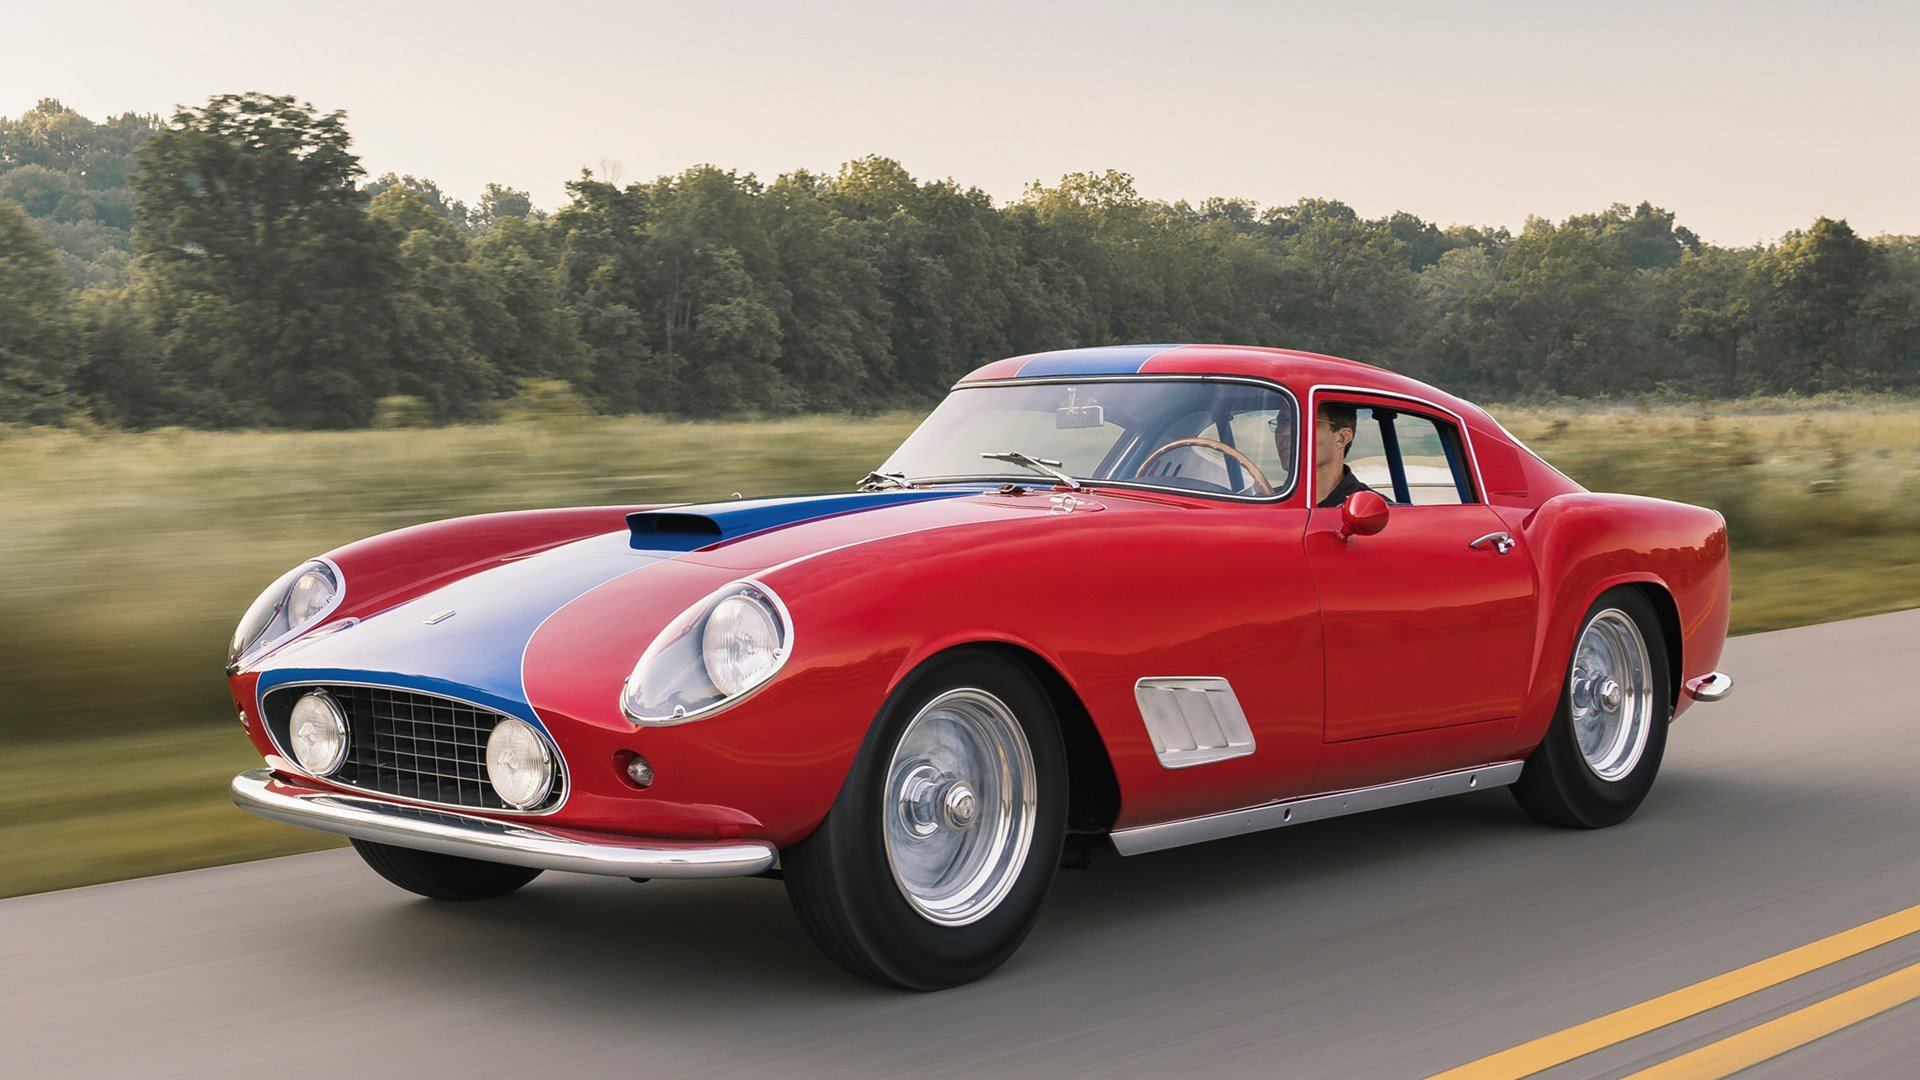 Tour de France–Style 1959 Ferrari 250 GT Coupe for sale on BaT